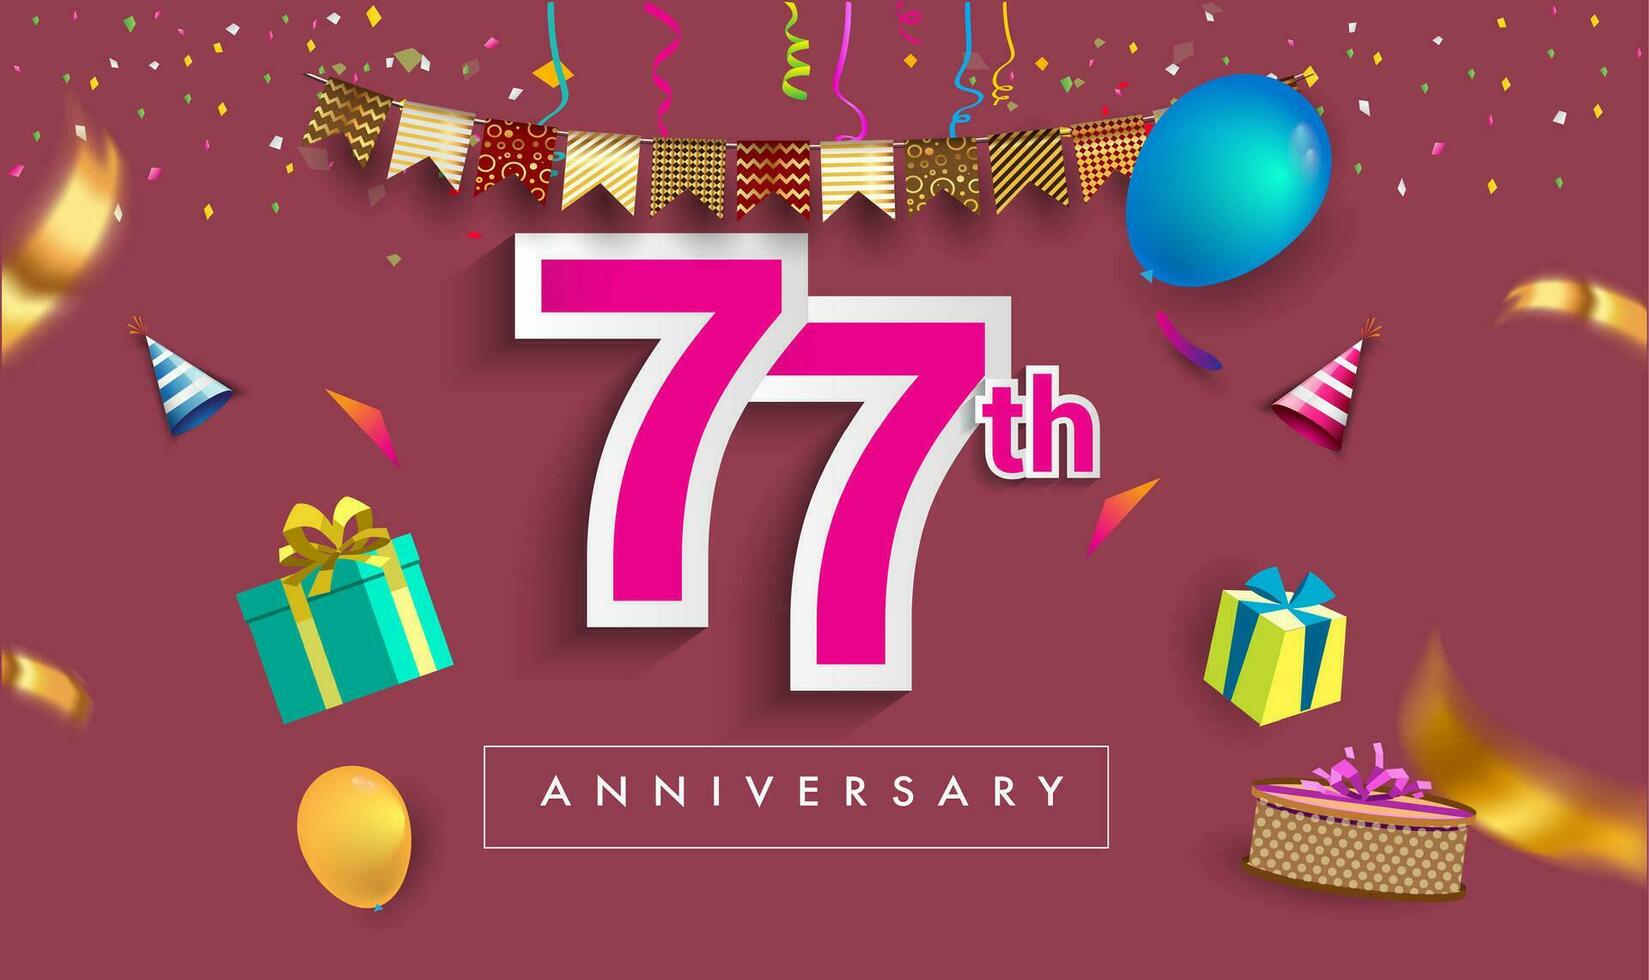 77: e år årsdag firande design, med gåva låda och ballonger, band, färgrik vektor mall element för din födelsedag fira fest.